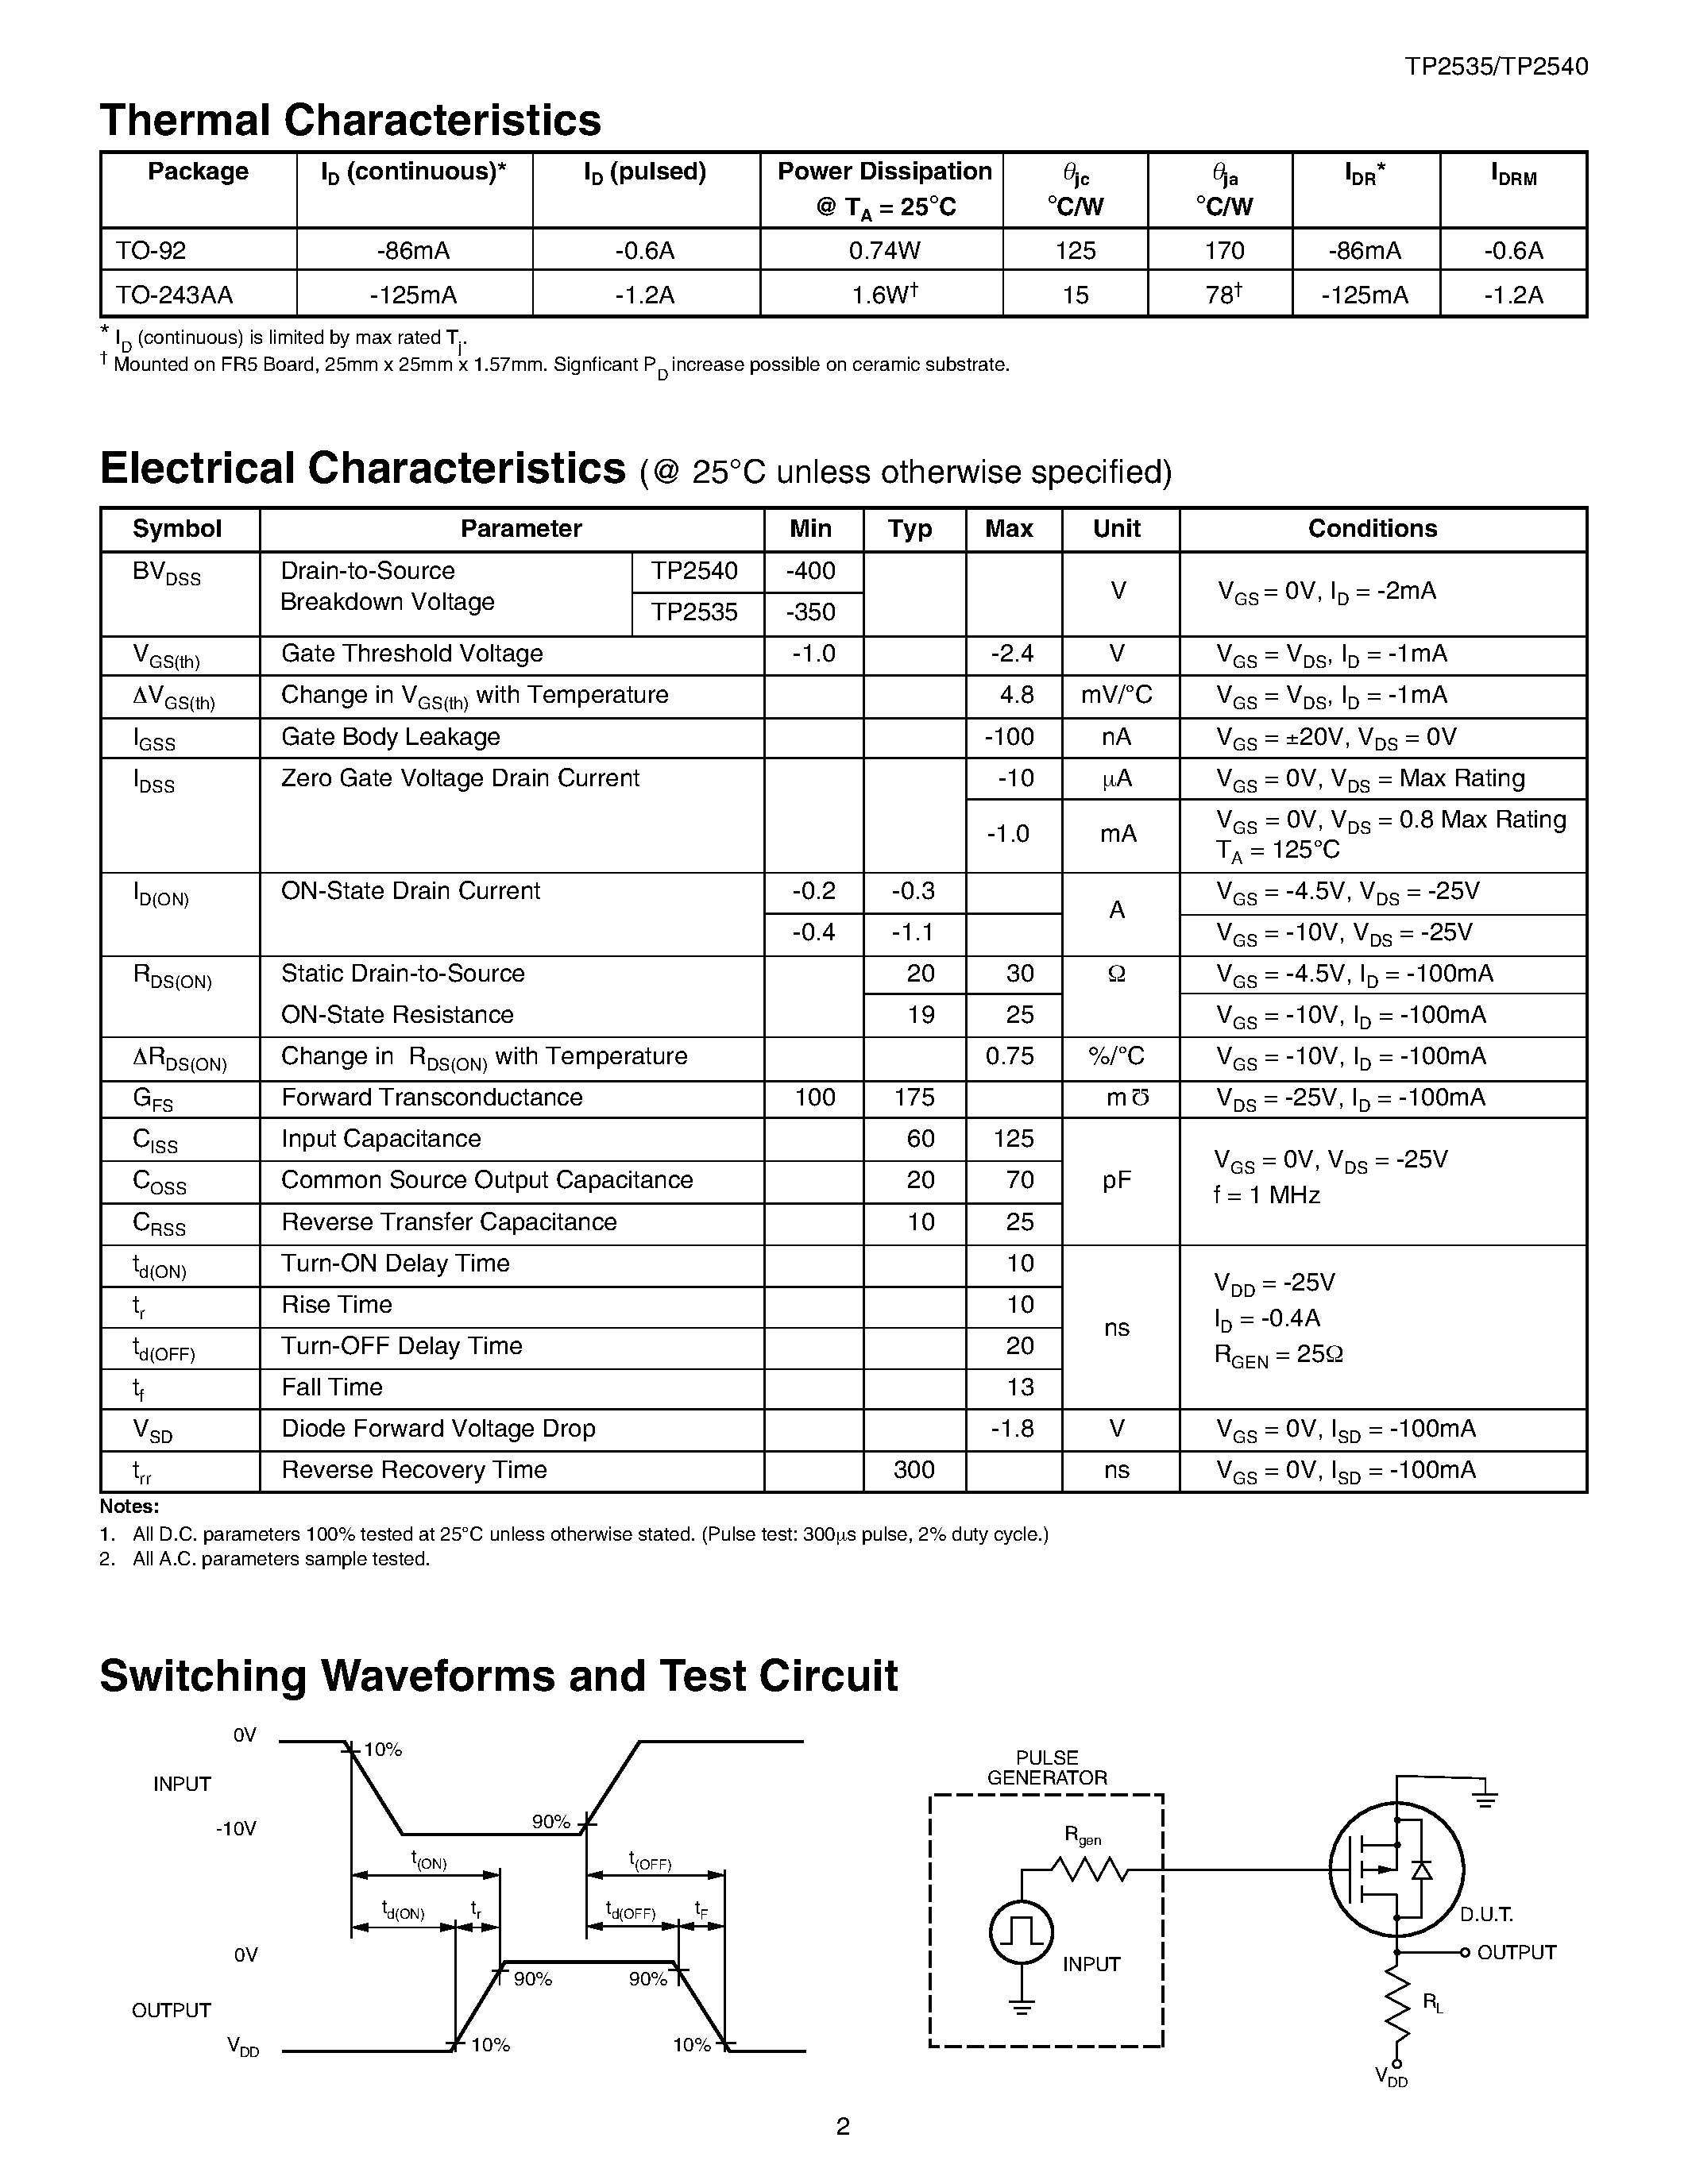 Даташит TP2535 - P-Channel Enhancement-Mode Vertical DMOS FETs страница 2